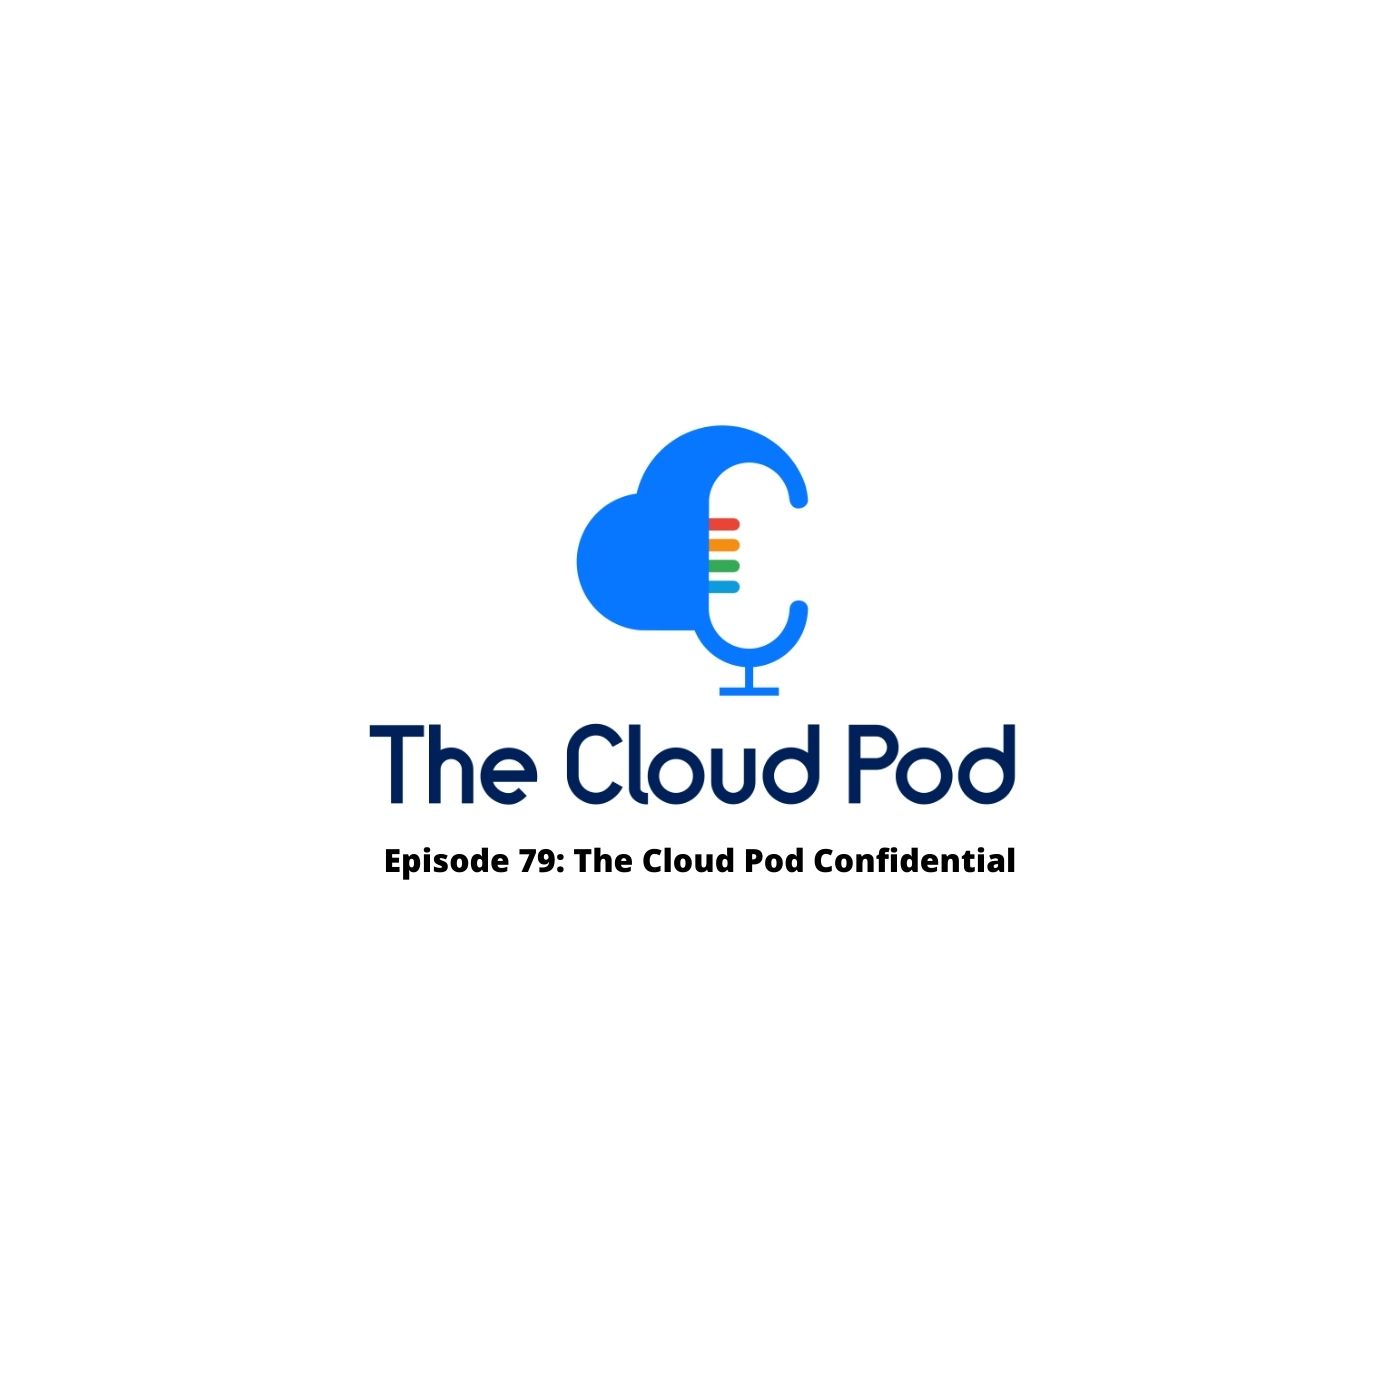 Episode 79 - The Cloud Pod Confidential